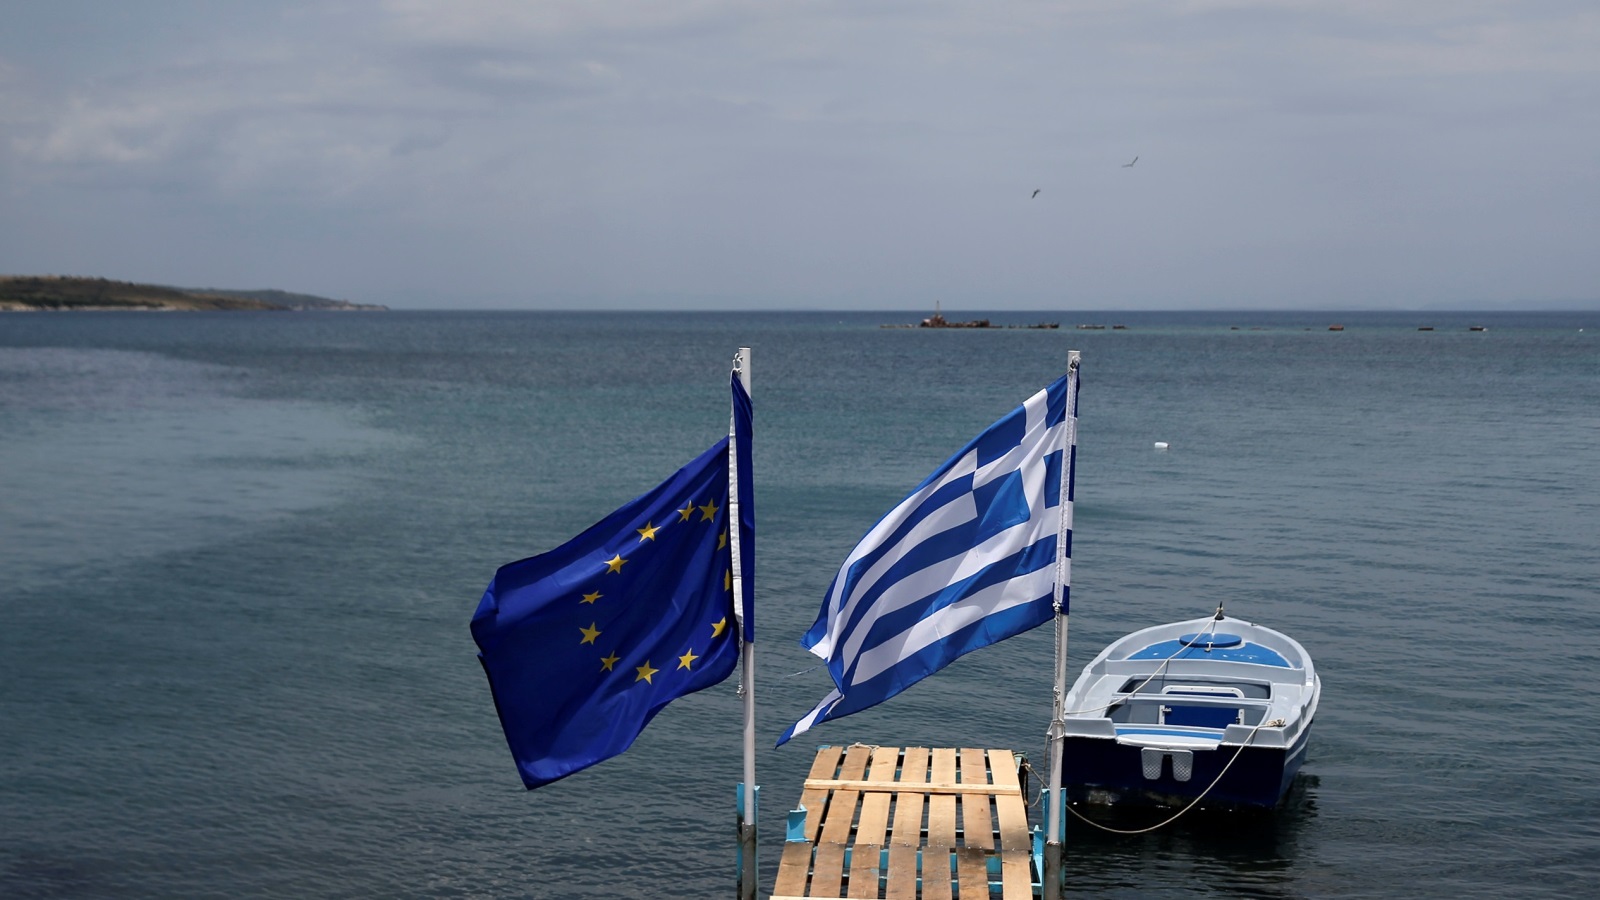 إن أي تقييم موضوعي لصفقة مجموعة اليورو الجديدة بشأن الدين العام اليوناني لا بد أن يخلص إلى أنها تحكم على اليونان بالعبودية الدائمة للدين